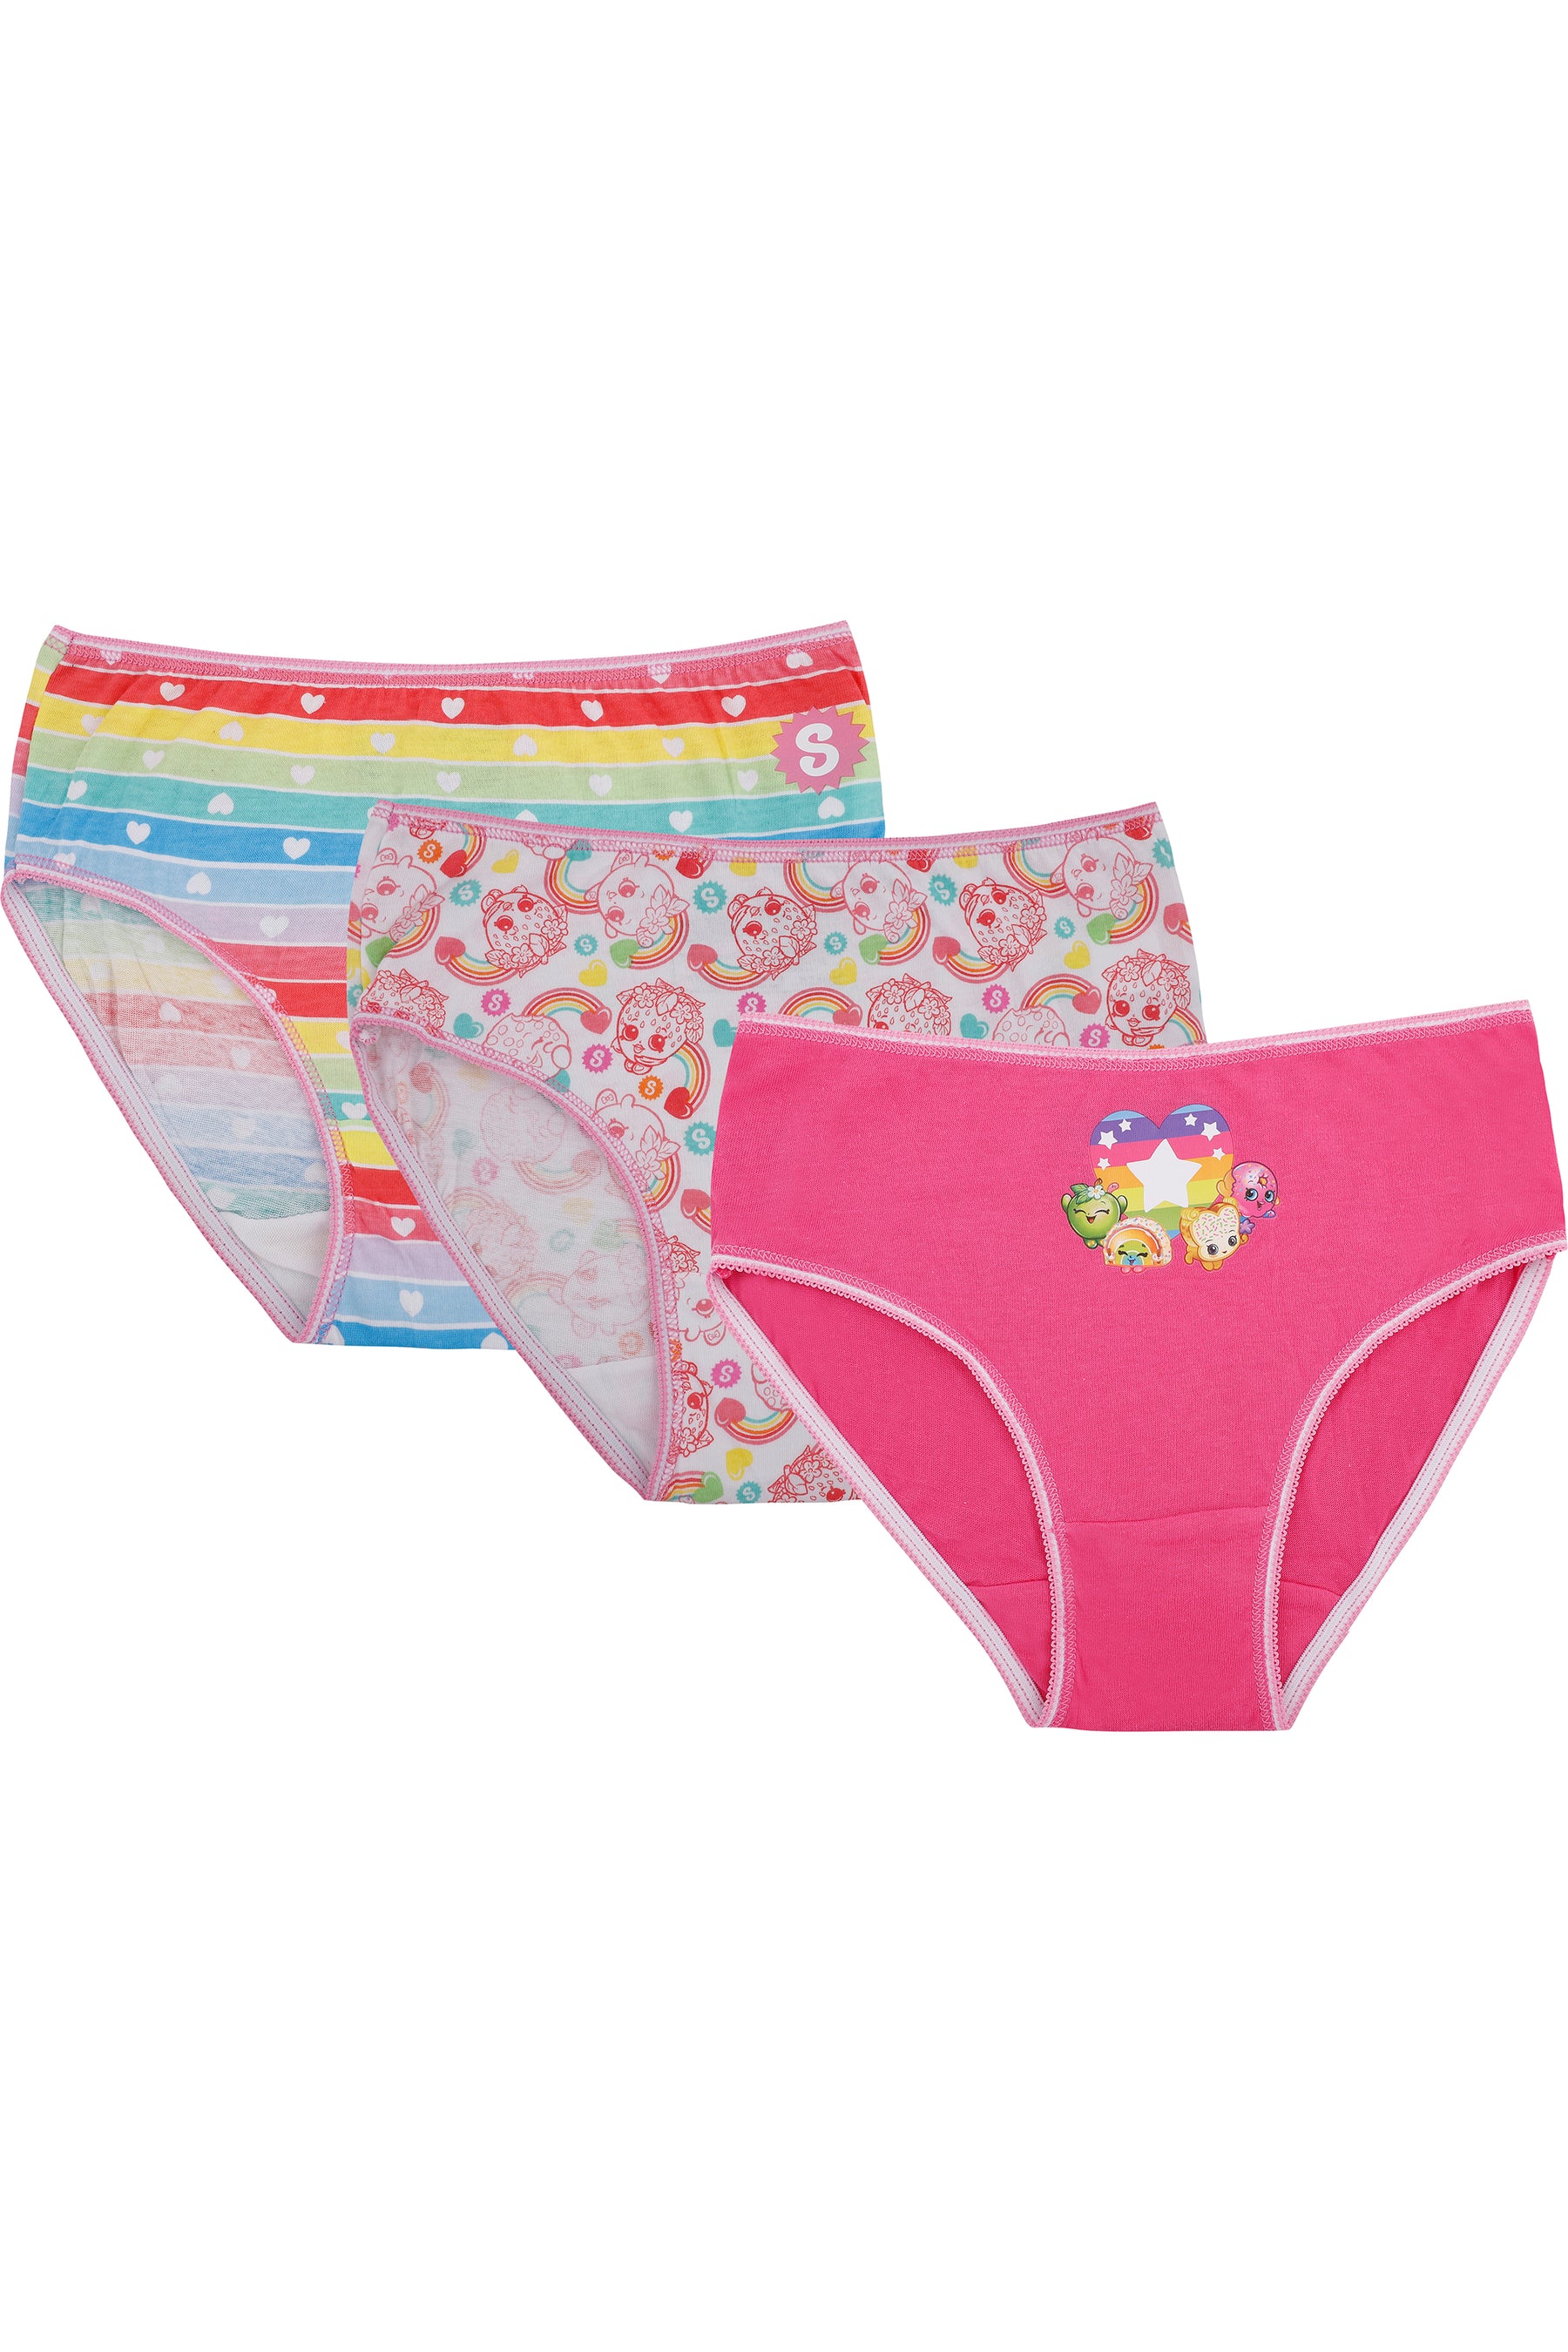 Shopkins Girls Underwear Rainbow Panties 3 Pack Briefs – PJammy